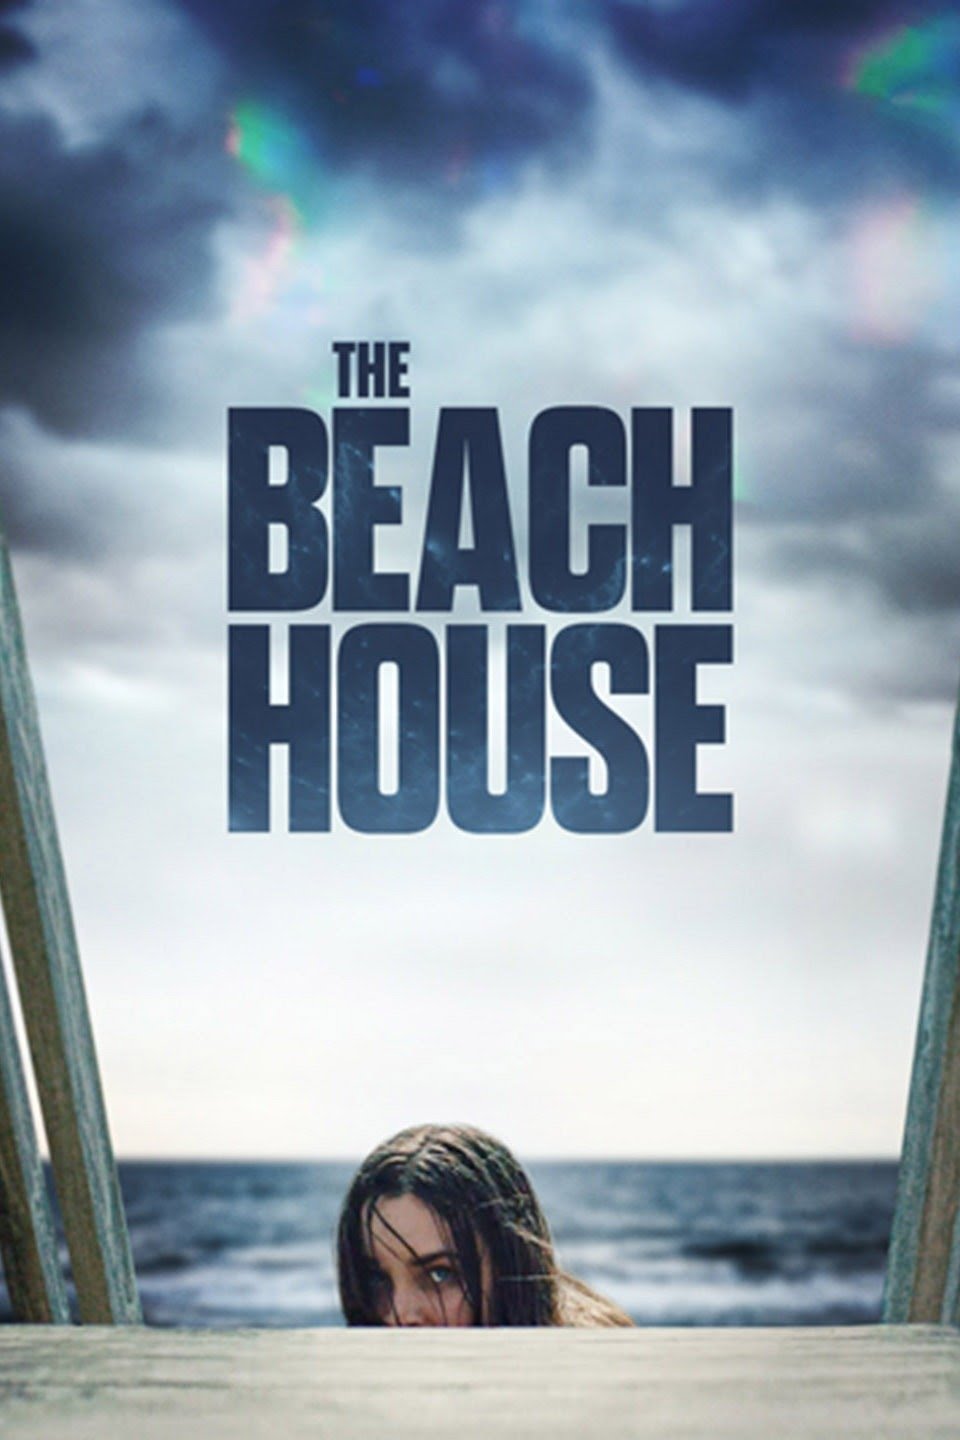 [ฝรั่ง] The Beach House (2019) บ้านหาดสยอง [1080p] [พากย์ไทย 2.0 + เสียงอังกฤษ 2.0] [บรรยายไทยฝัง] [เสียงไทยมาสเตอร์ + ซับไทยฝัง] [USERLOAD]